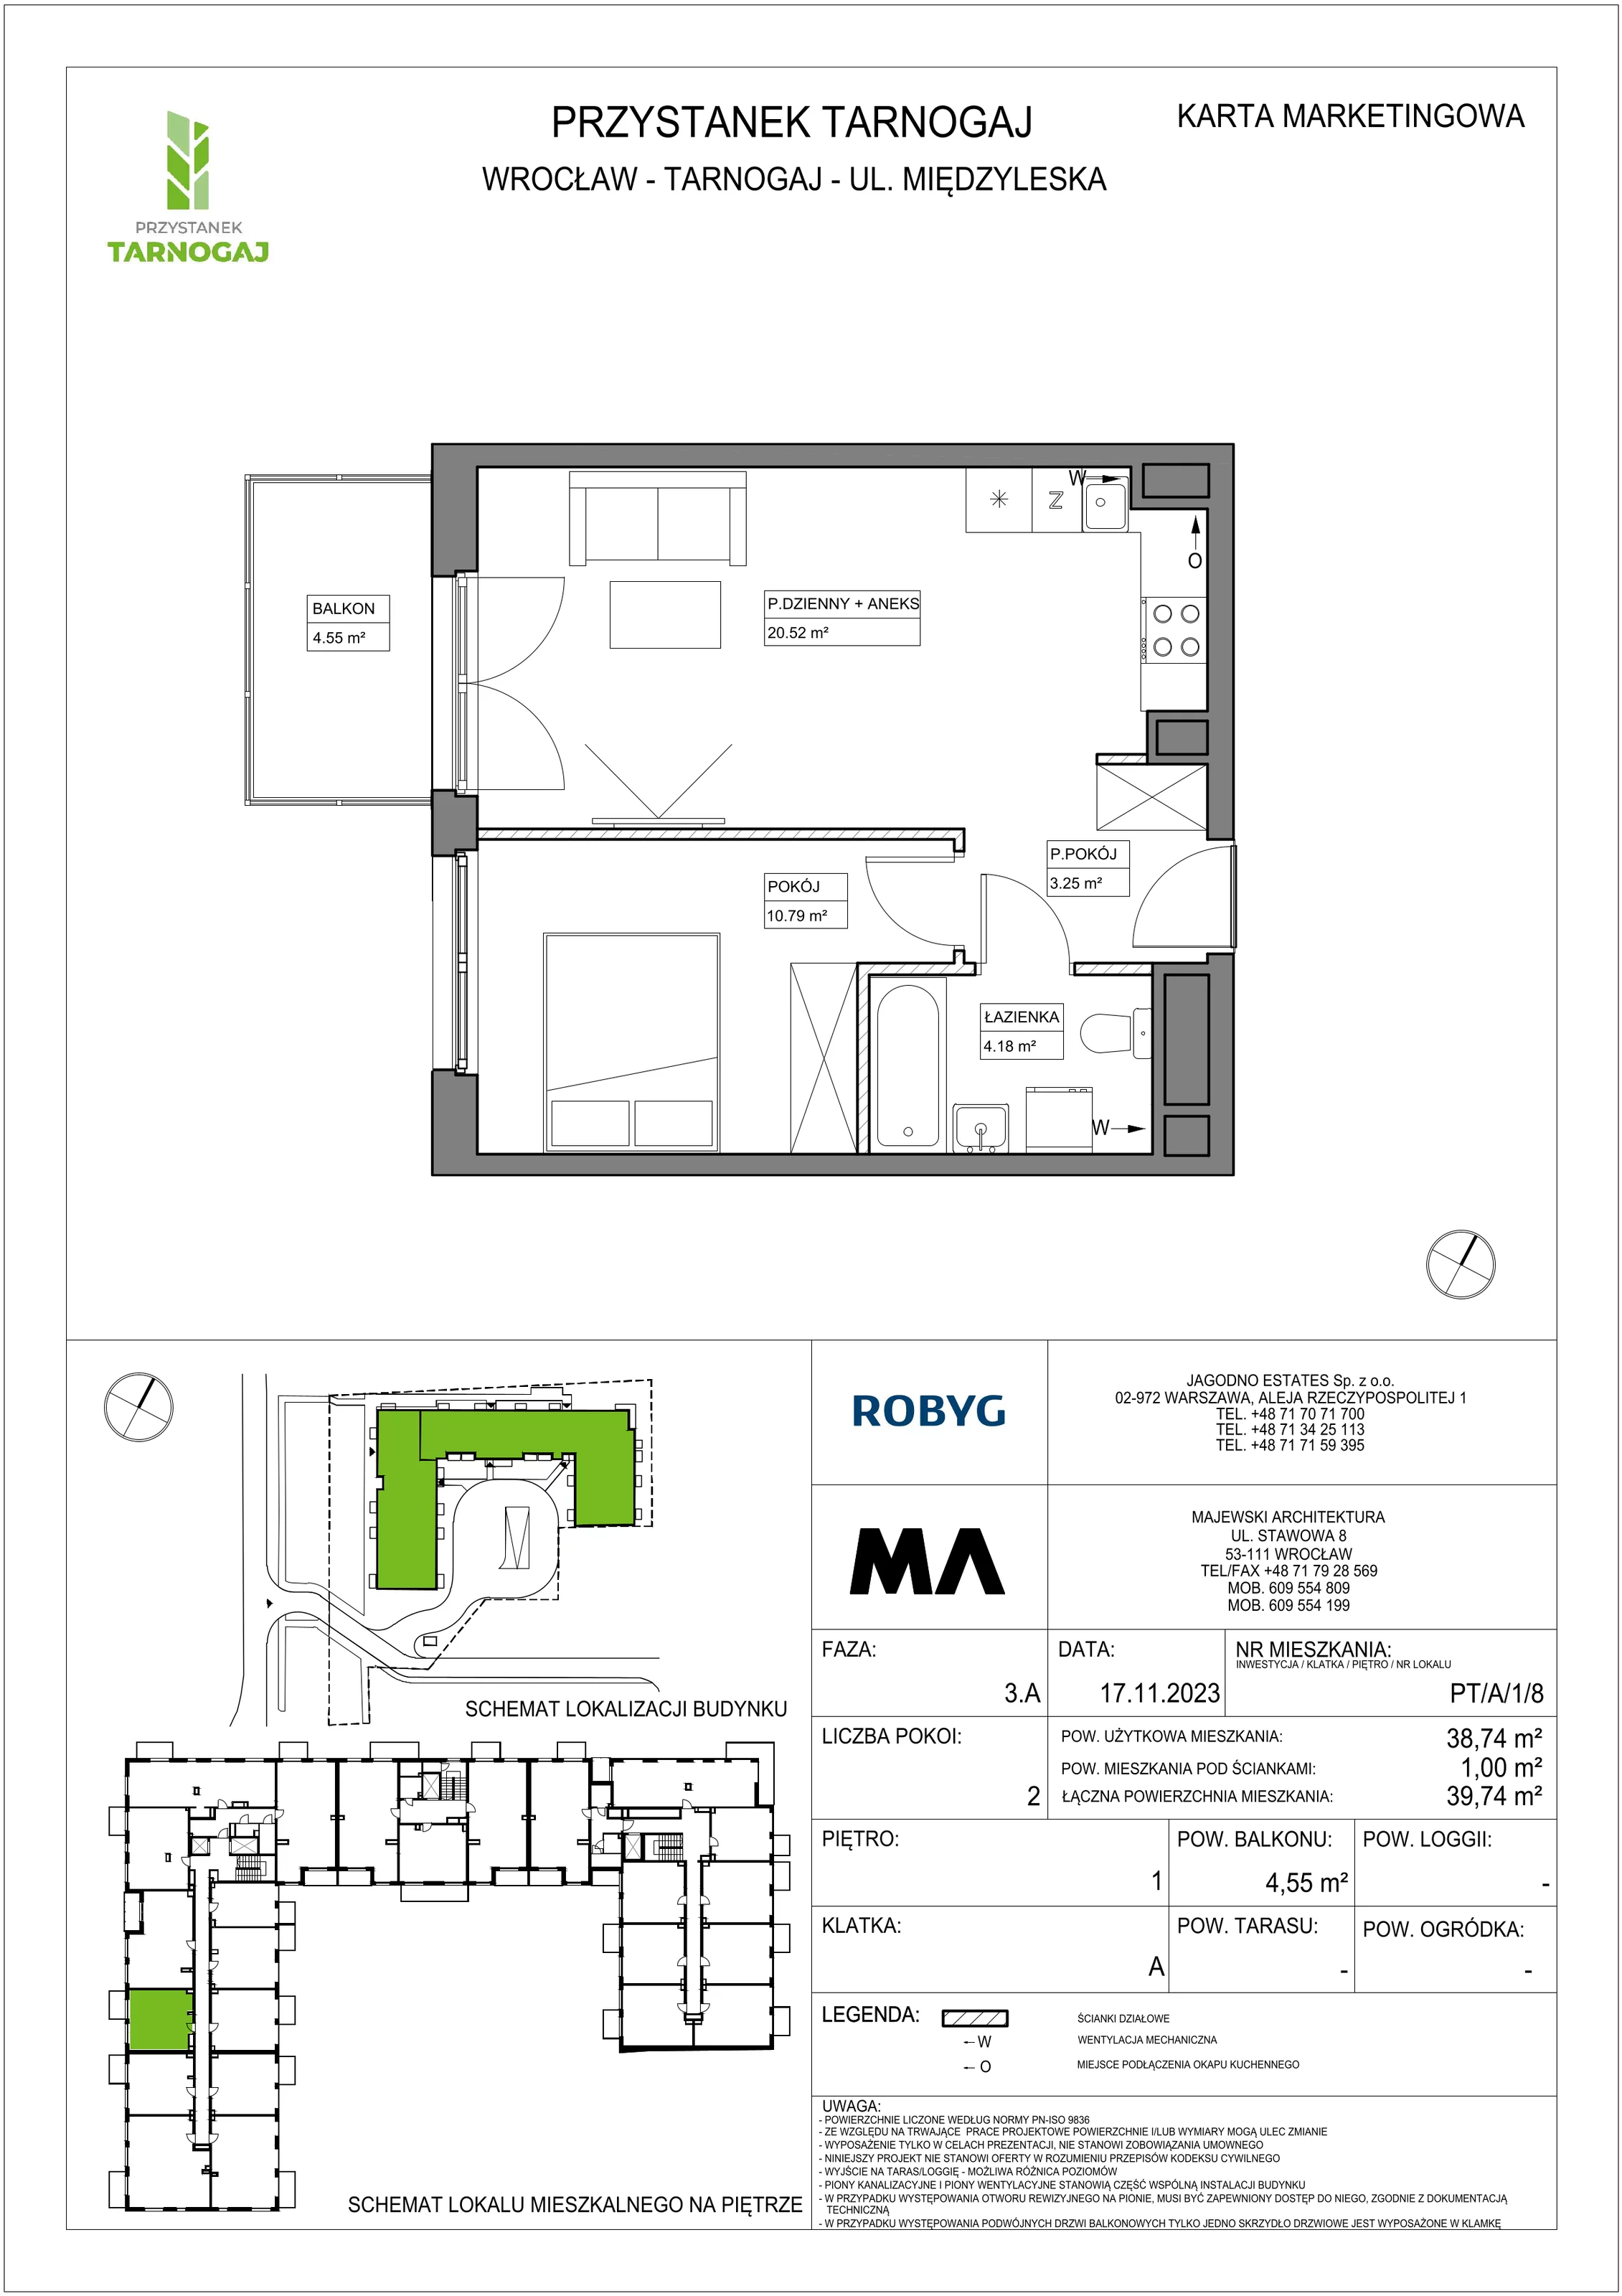 Mieszkanie 38,74 m², piętro 1, oferta nr PT/A/1/8, Przystanek Tarnogaj, Wrocław, Tarnogaj, Krzyki, ul. Międzyleska / Gazowa